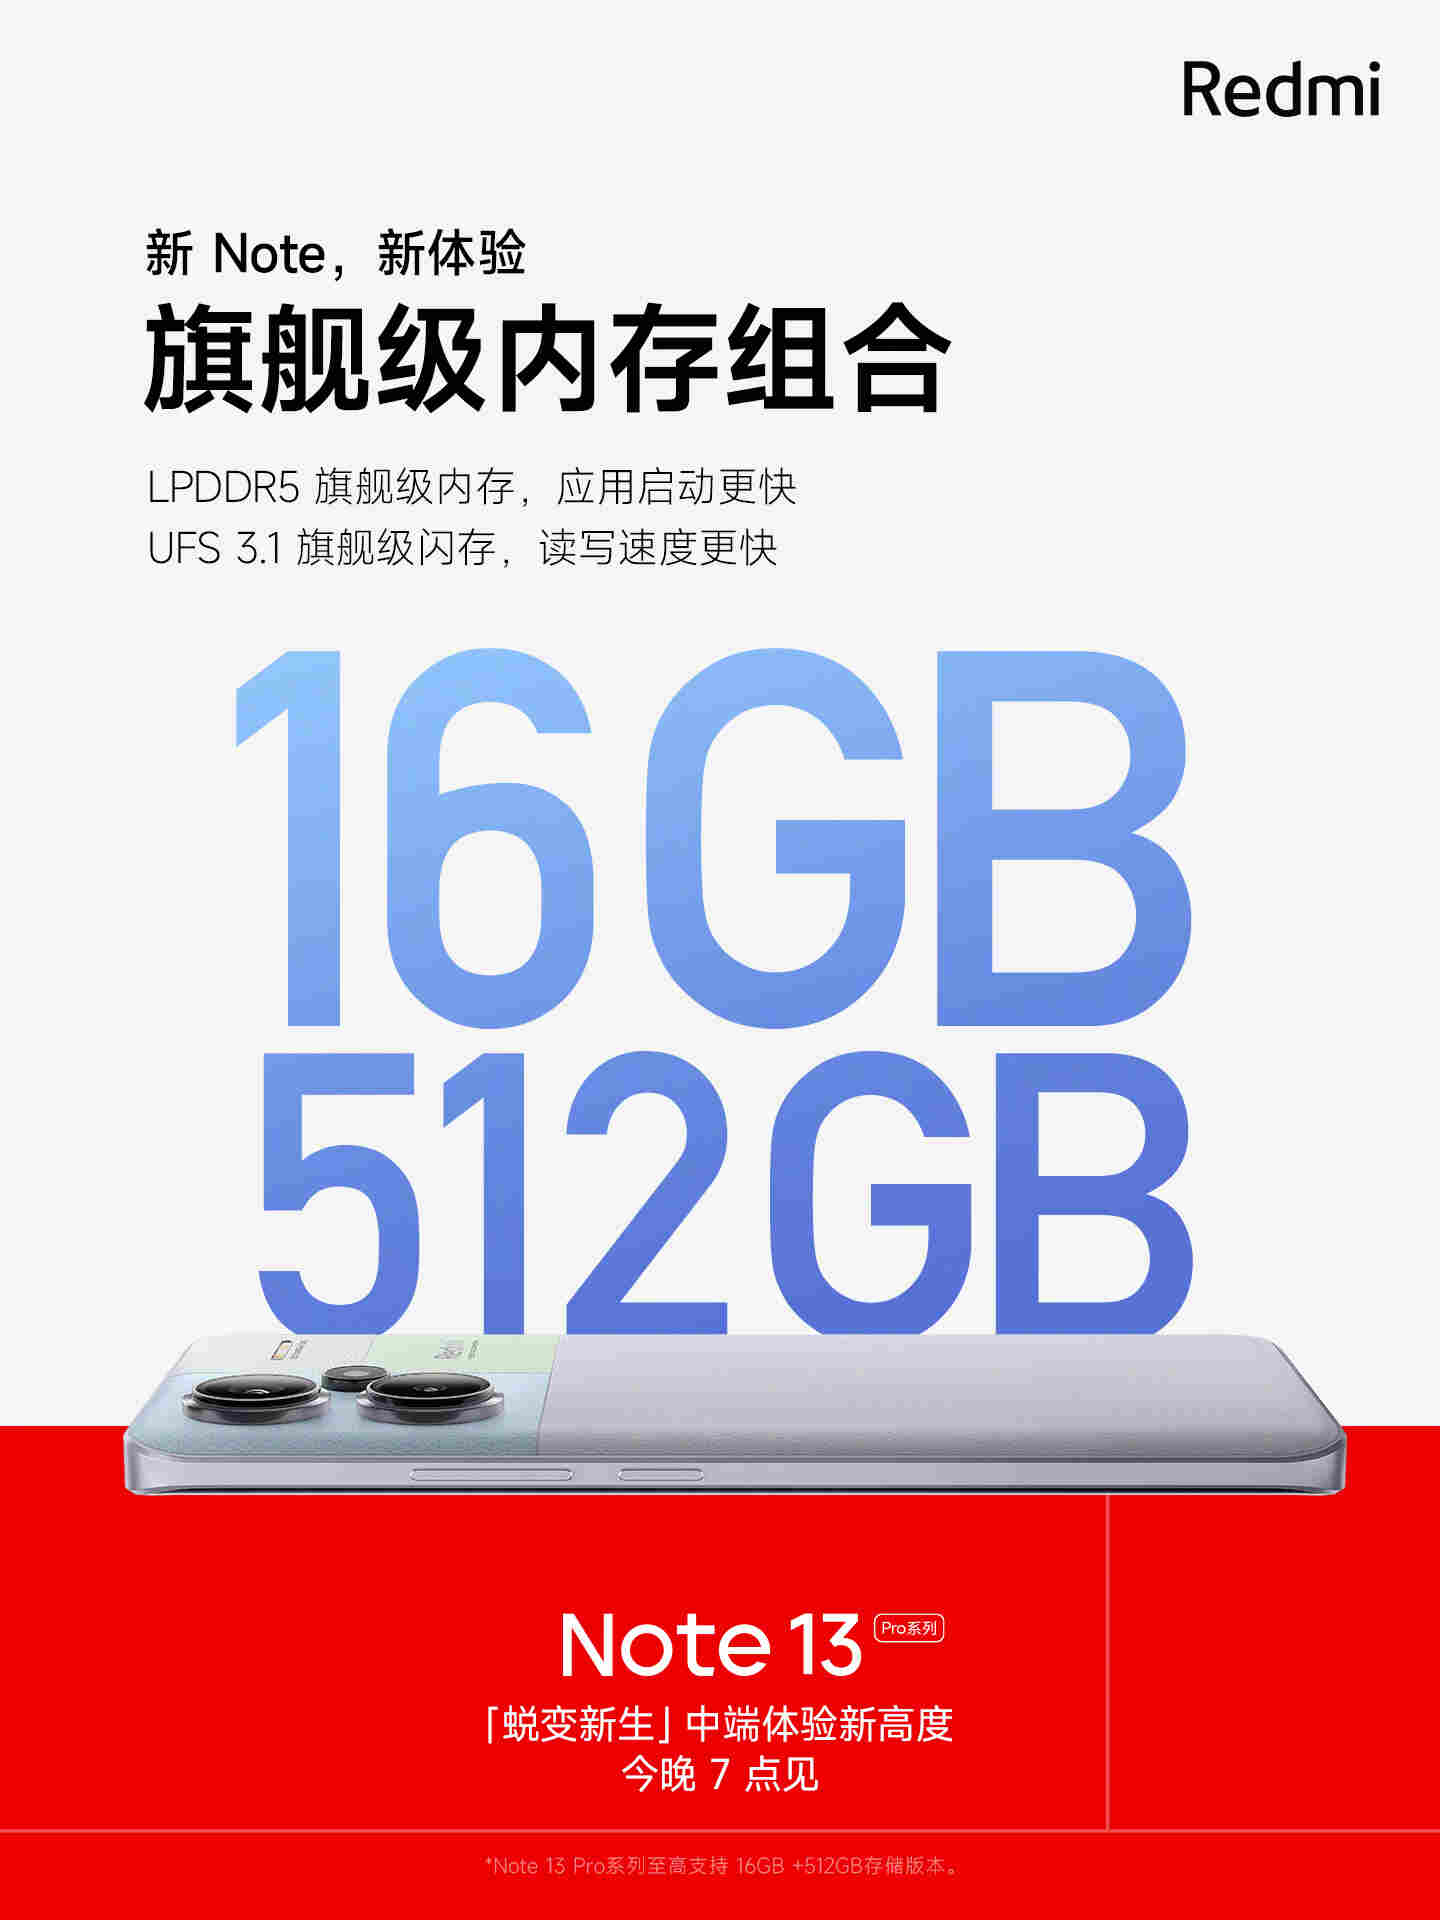 Redmi Note 13 Pro Plus 